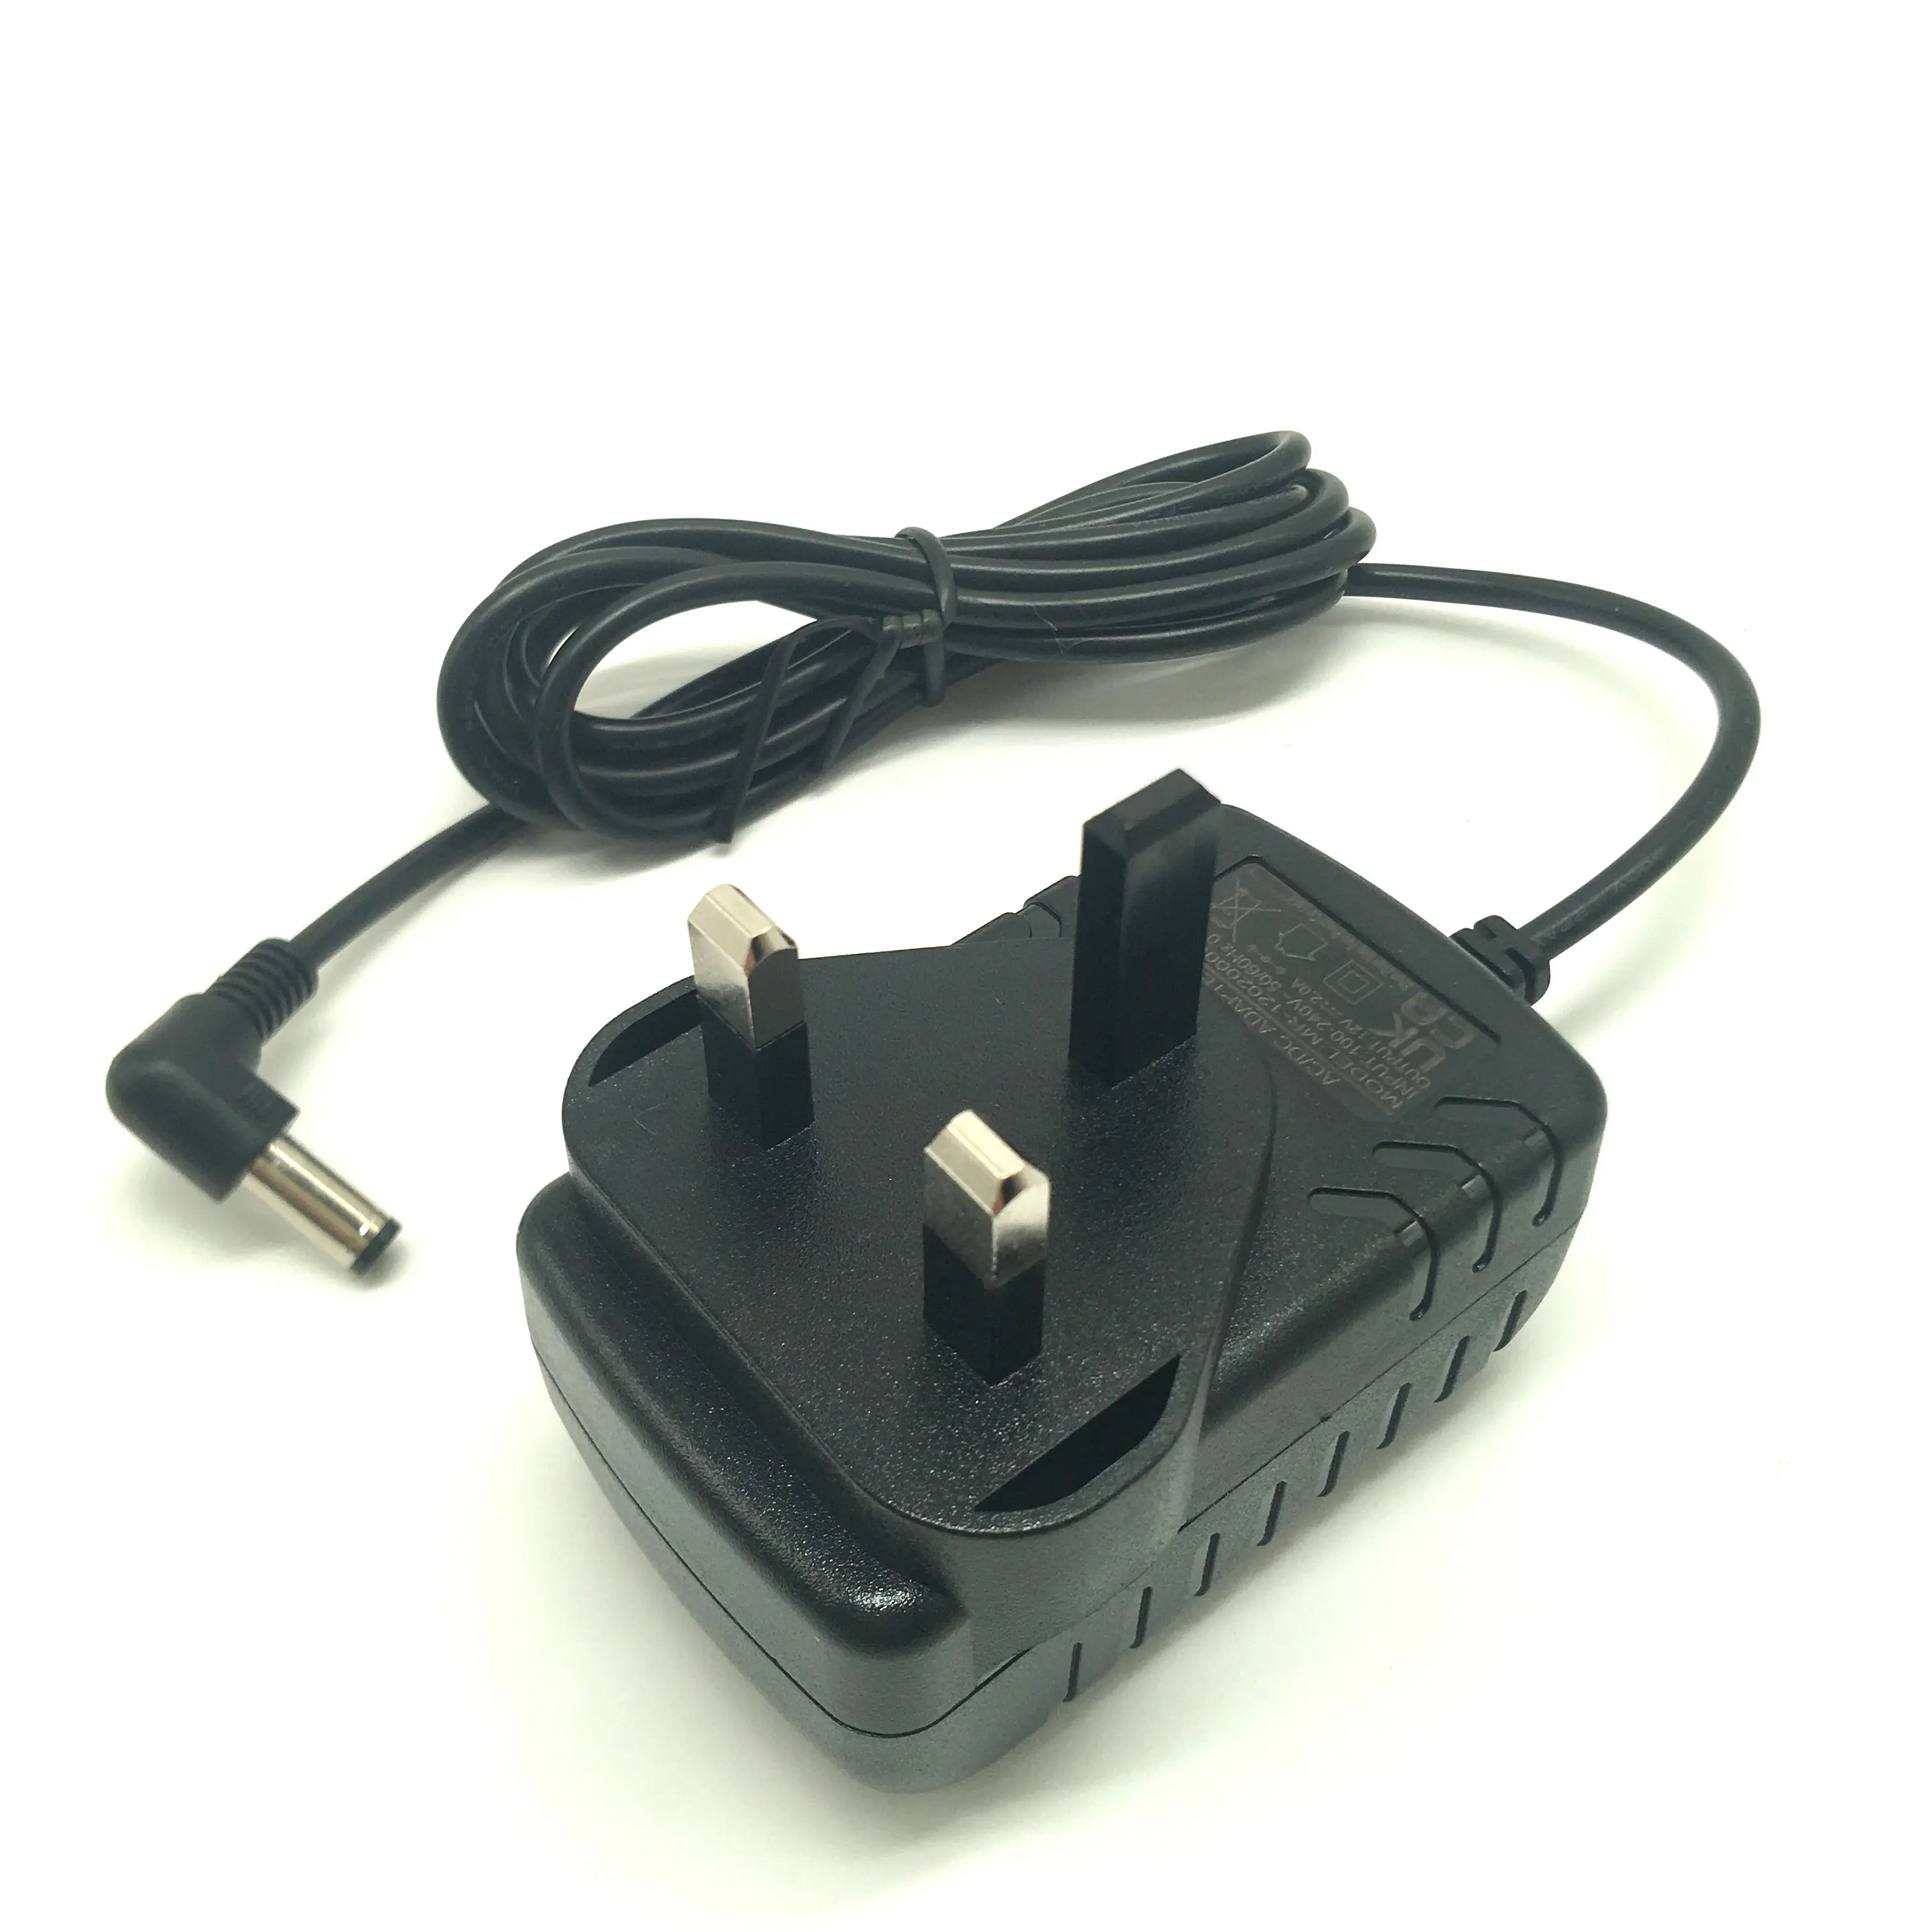 Wholesale Good Quality Universal Power Adapter UK AU US EU Plug 12v 2a 2000ma 24w Power Adapter UK Plug